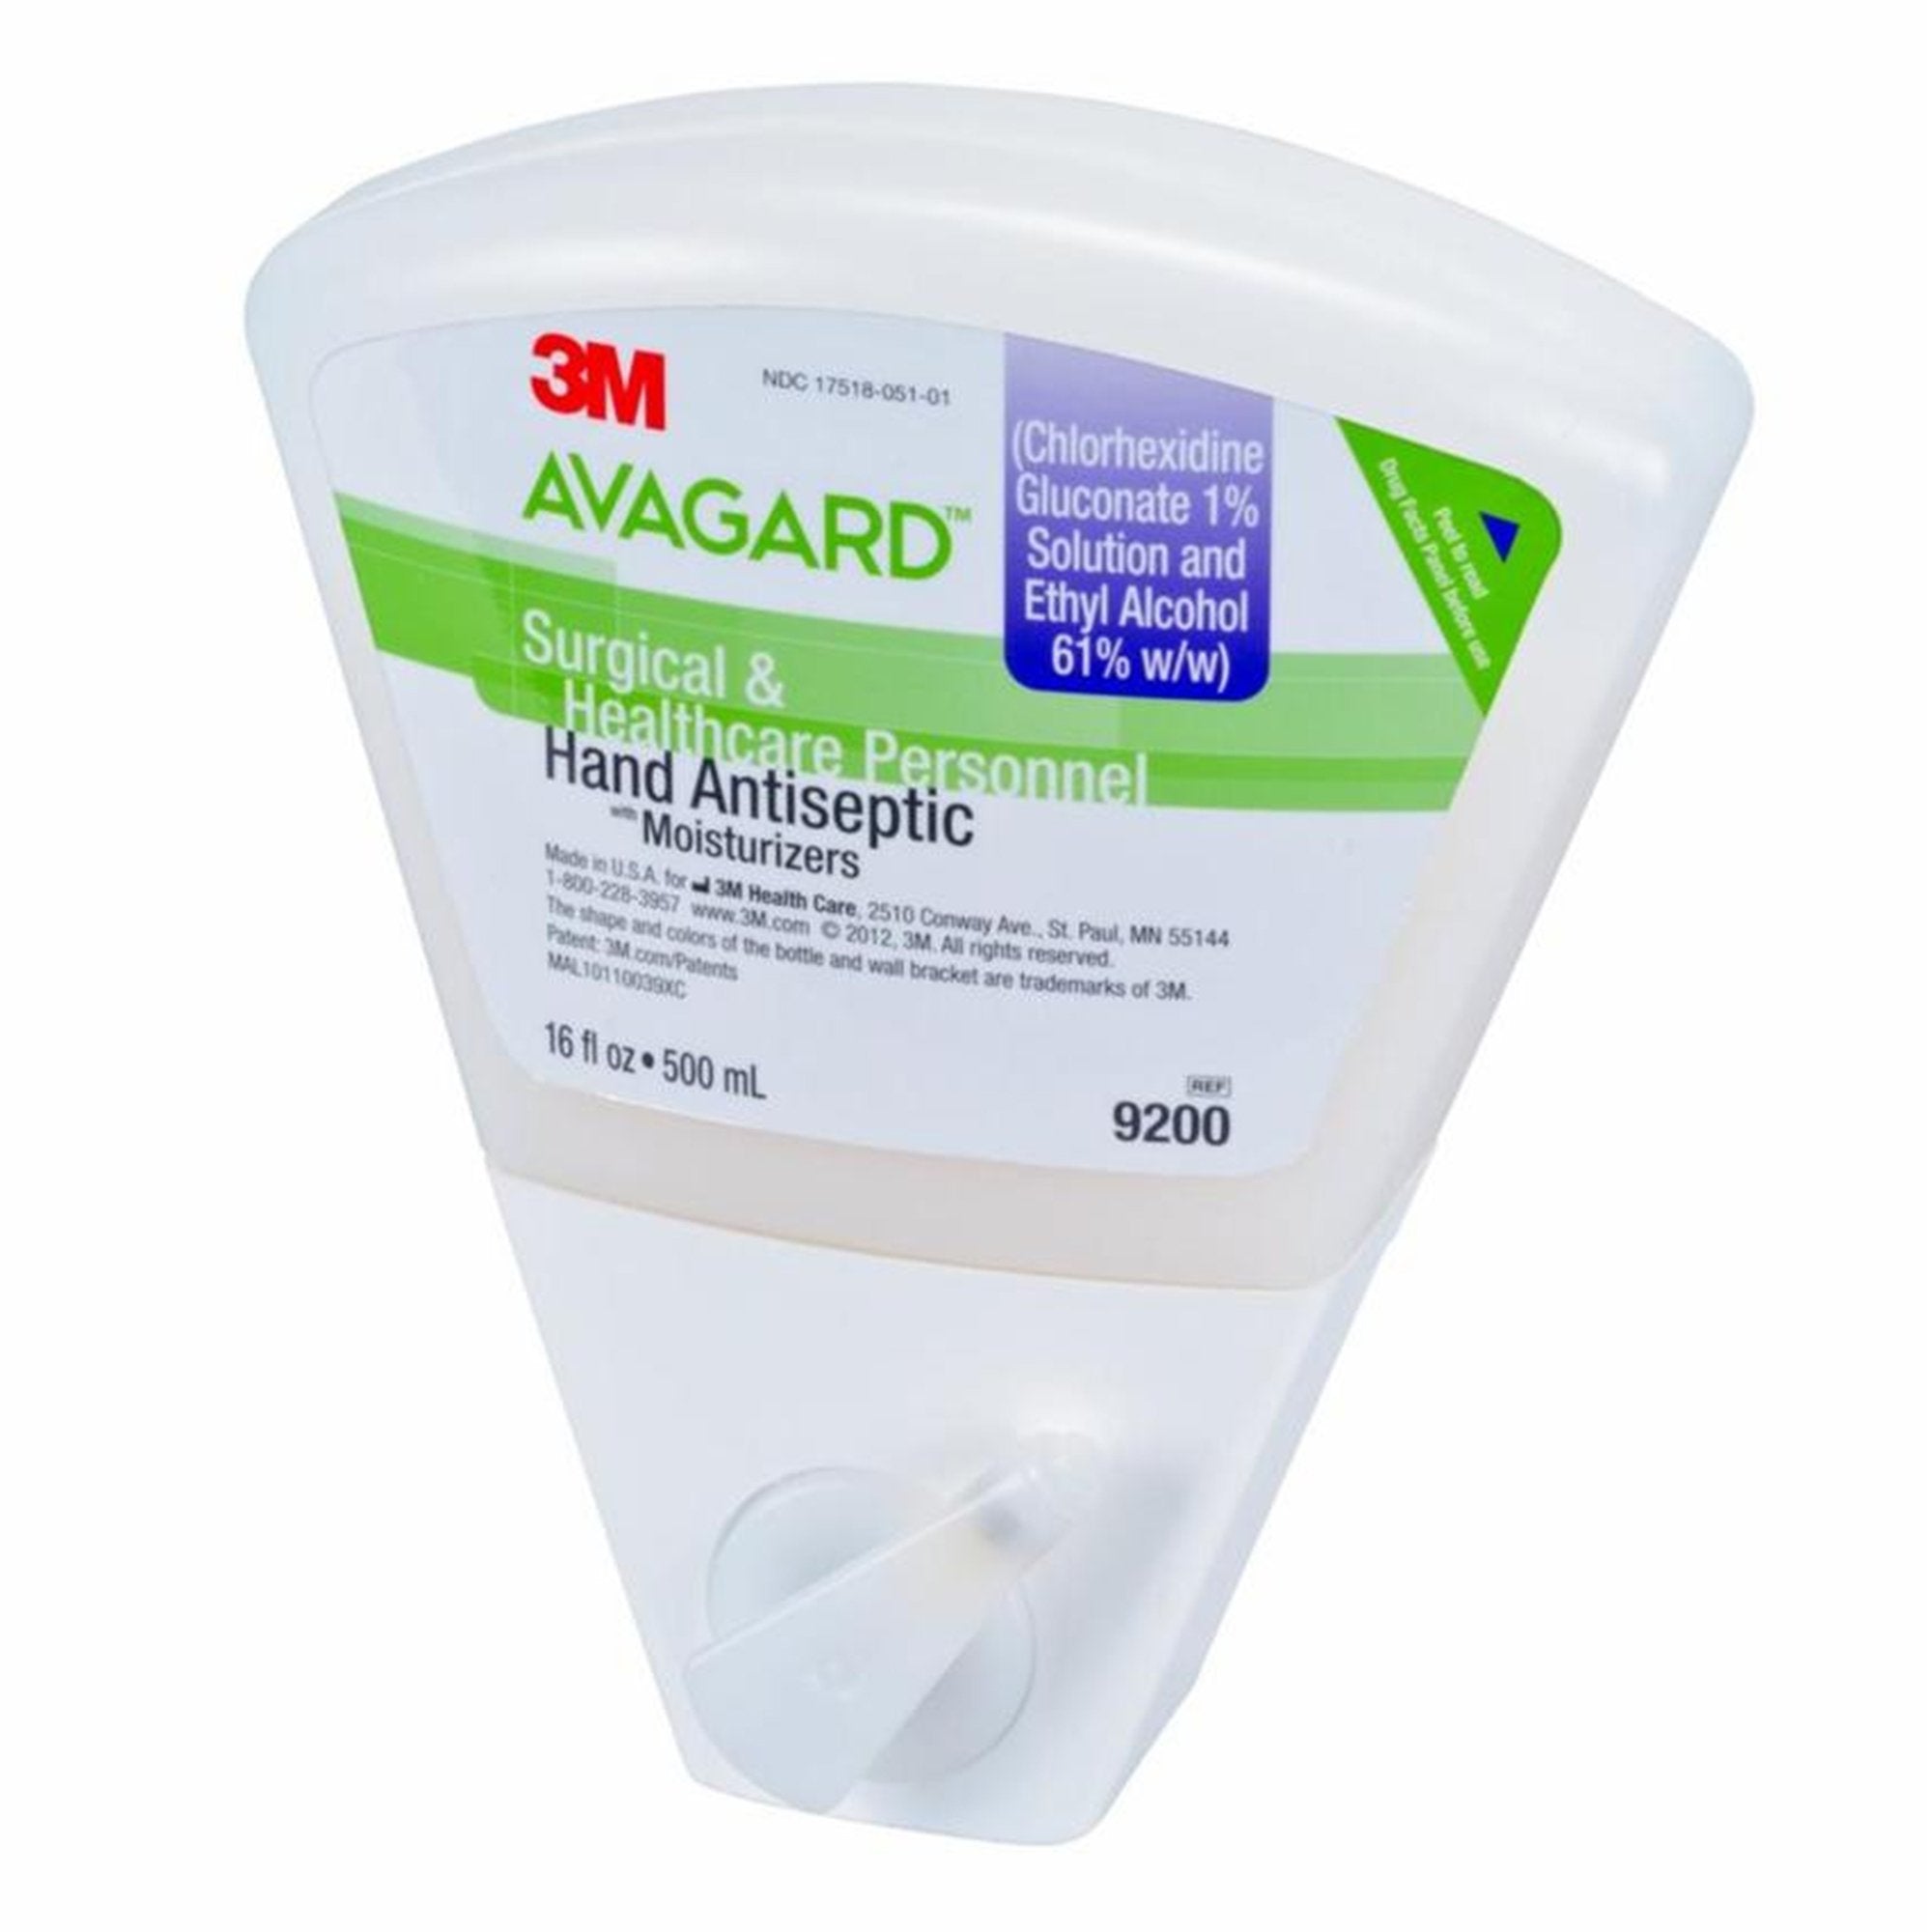 Waterless Surgical Scrub 3M Avagard 16 oz. Dispenser Refill Bottle 1% / 61% Strength CHG (Chlorhexidine Gluconate) / Ethyl Alcohol NonSterile